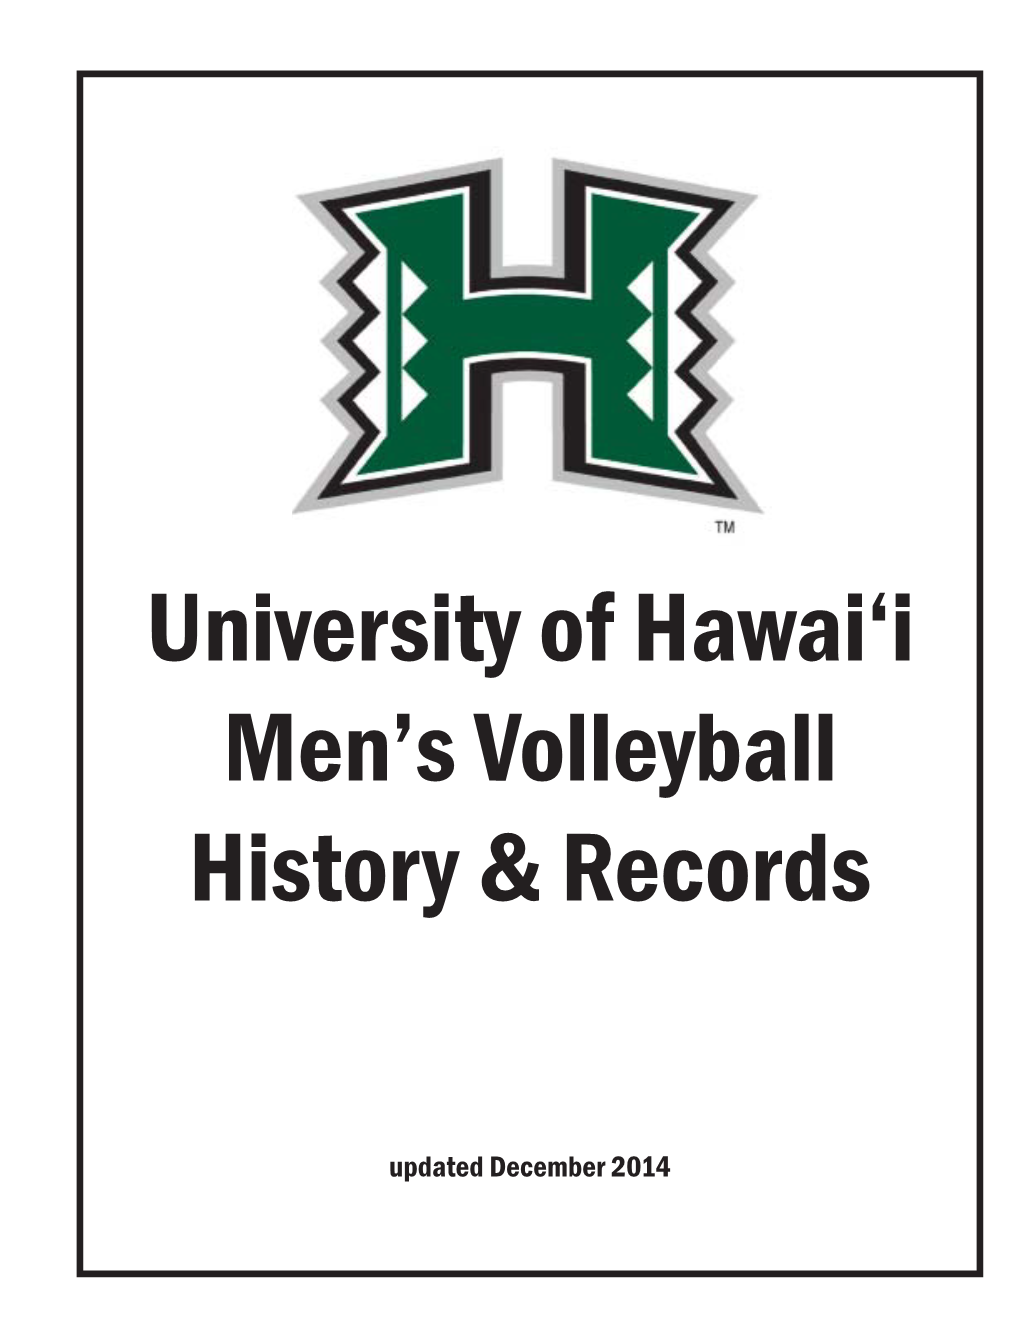 University of Hawai'i Men's Volleyball History & Records